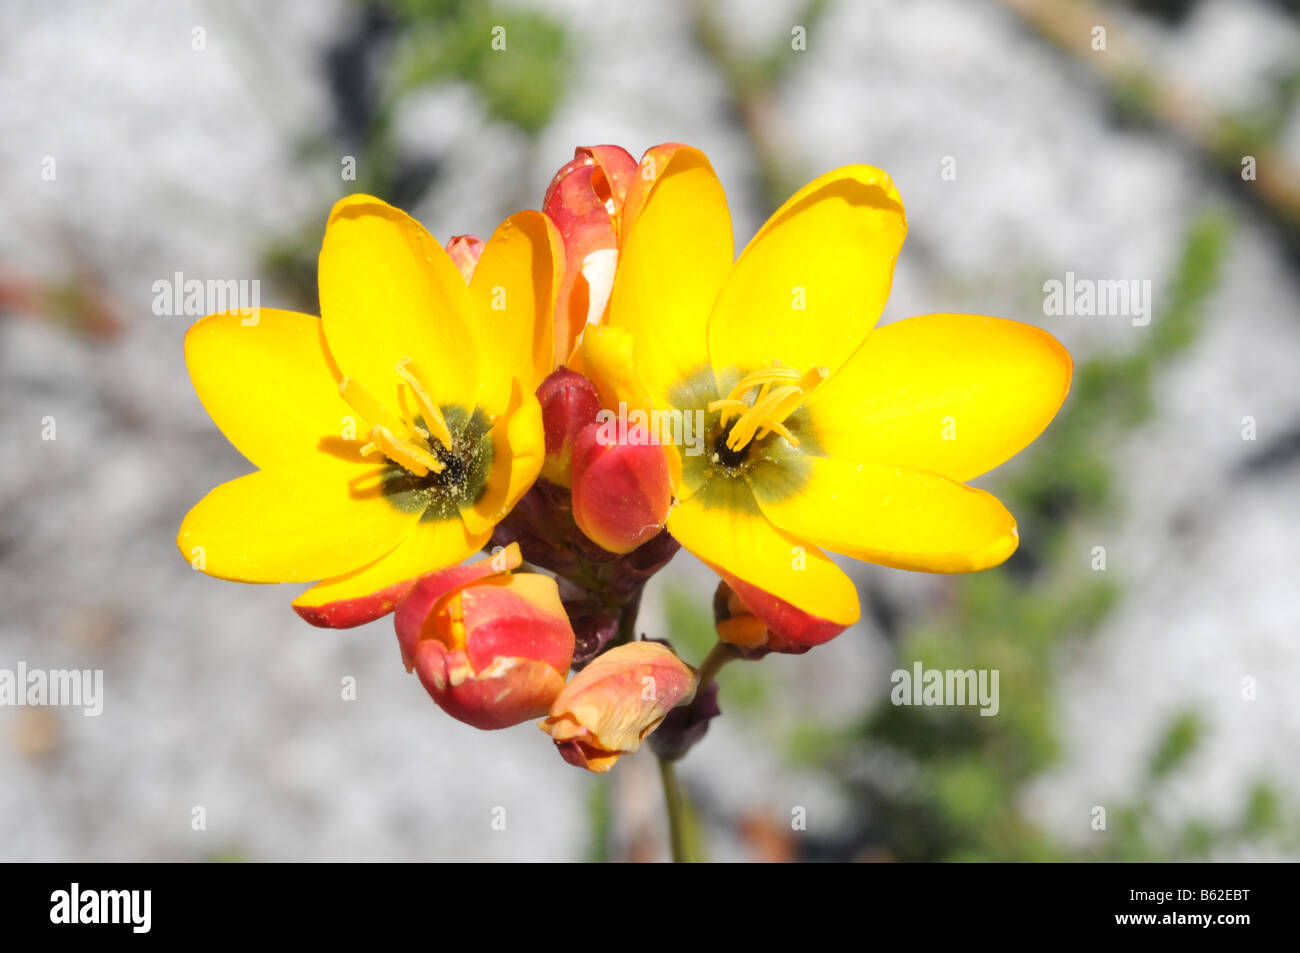 Ixia dubia flowering on Table Mountain Stock Photo